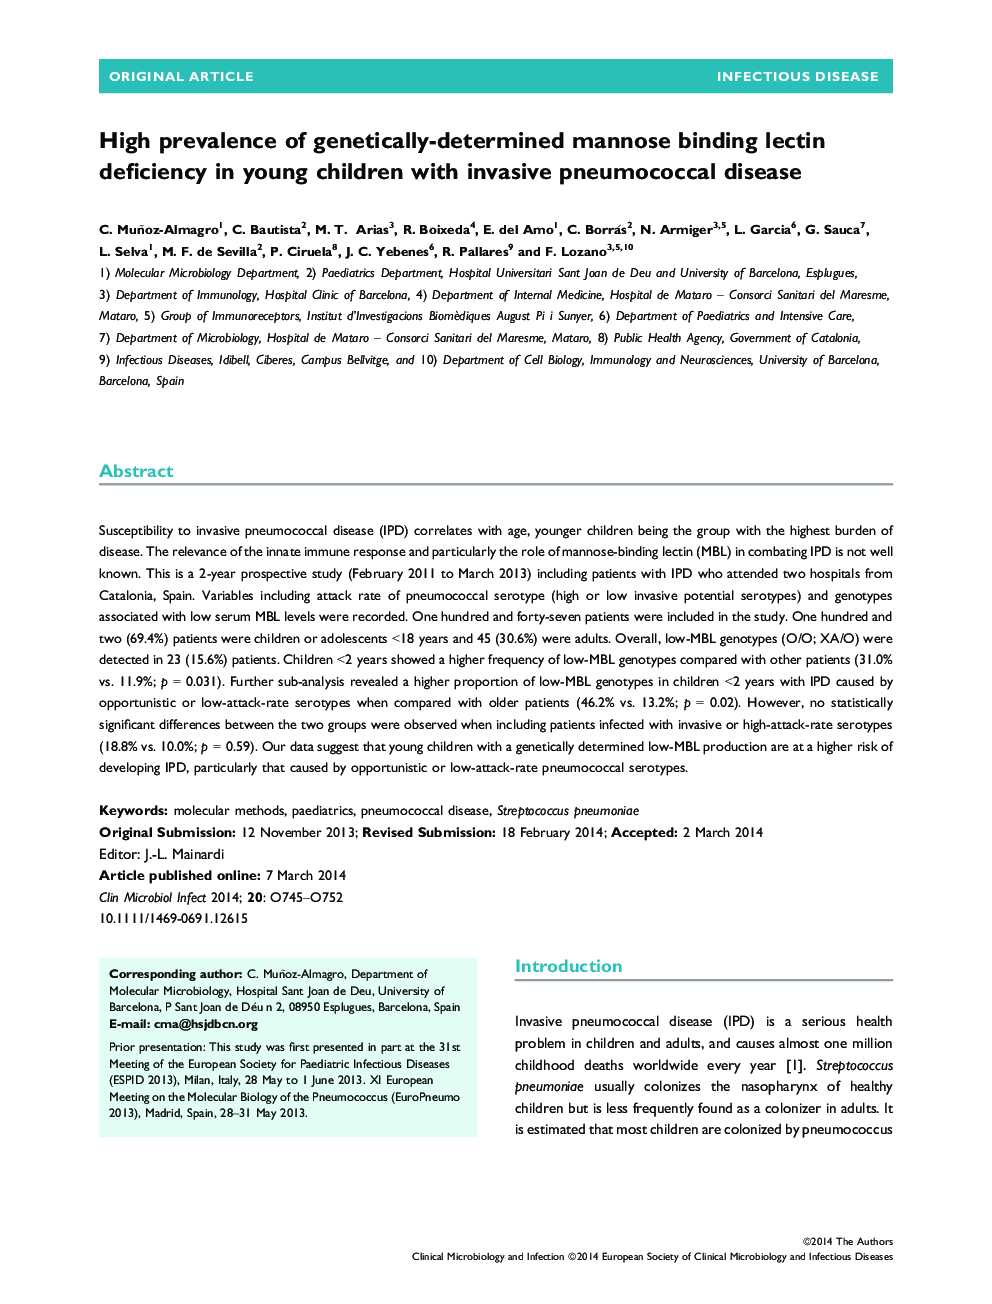 شیوع بالای کمبود لکتین ناشی از ژنتیکی ناشی از مانوز در کودکان جوان مبتلا به بیماری پنوموکوک مهاجم 